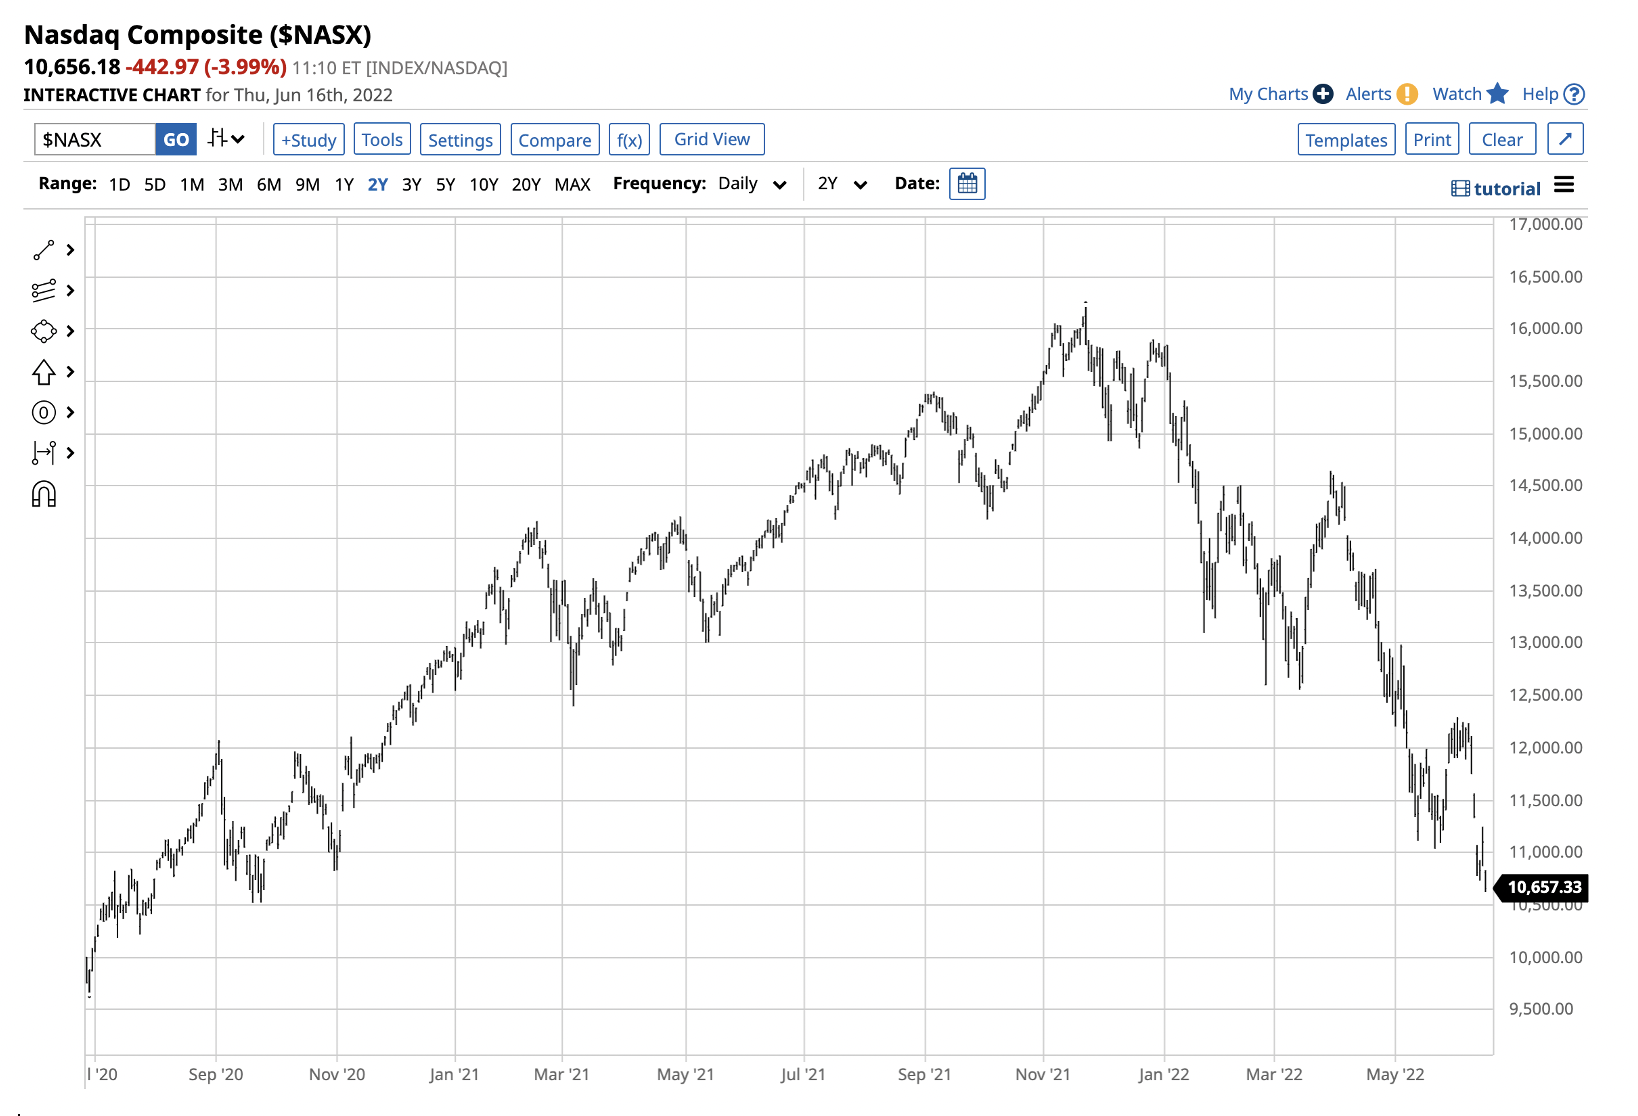 NASDAQ Composite Daily Chart